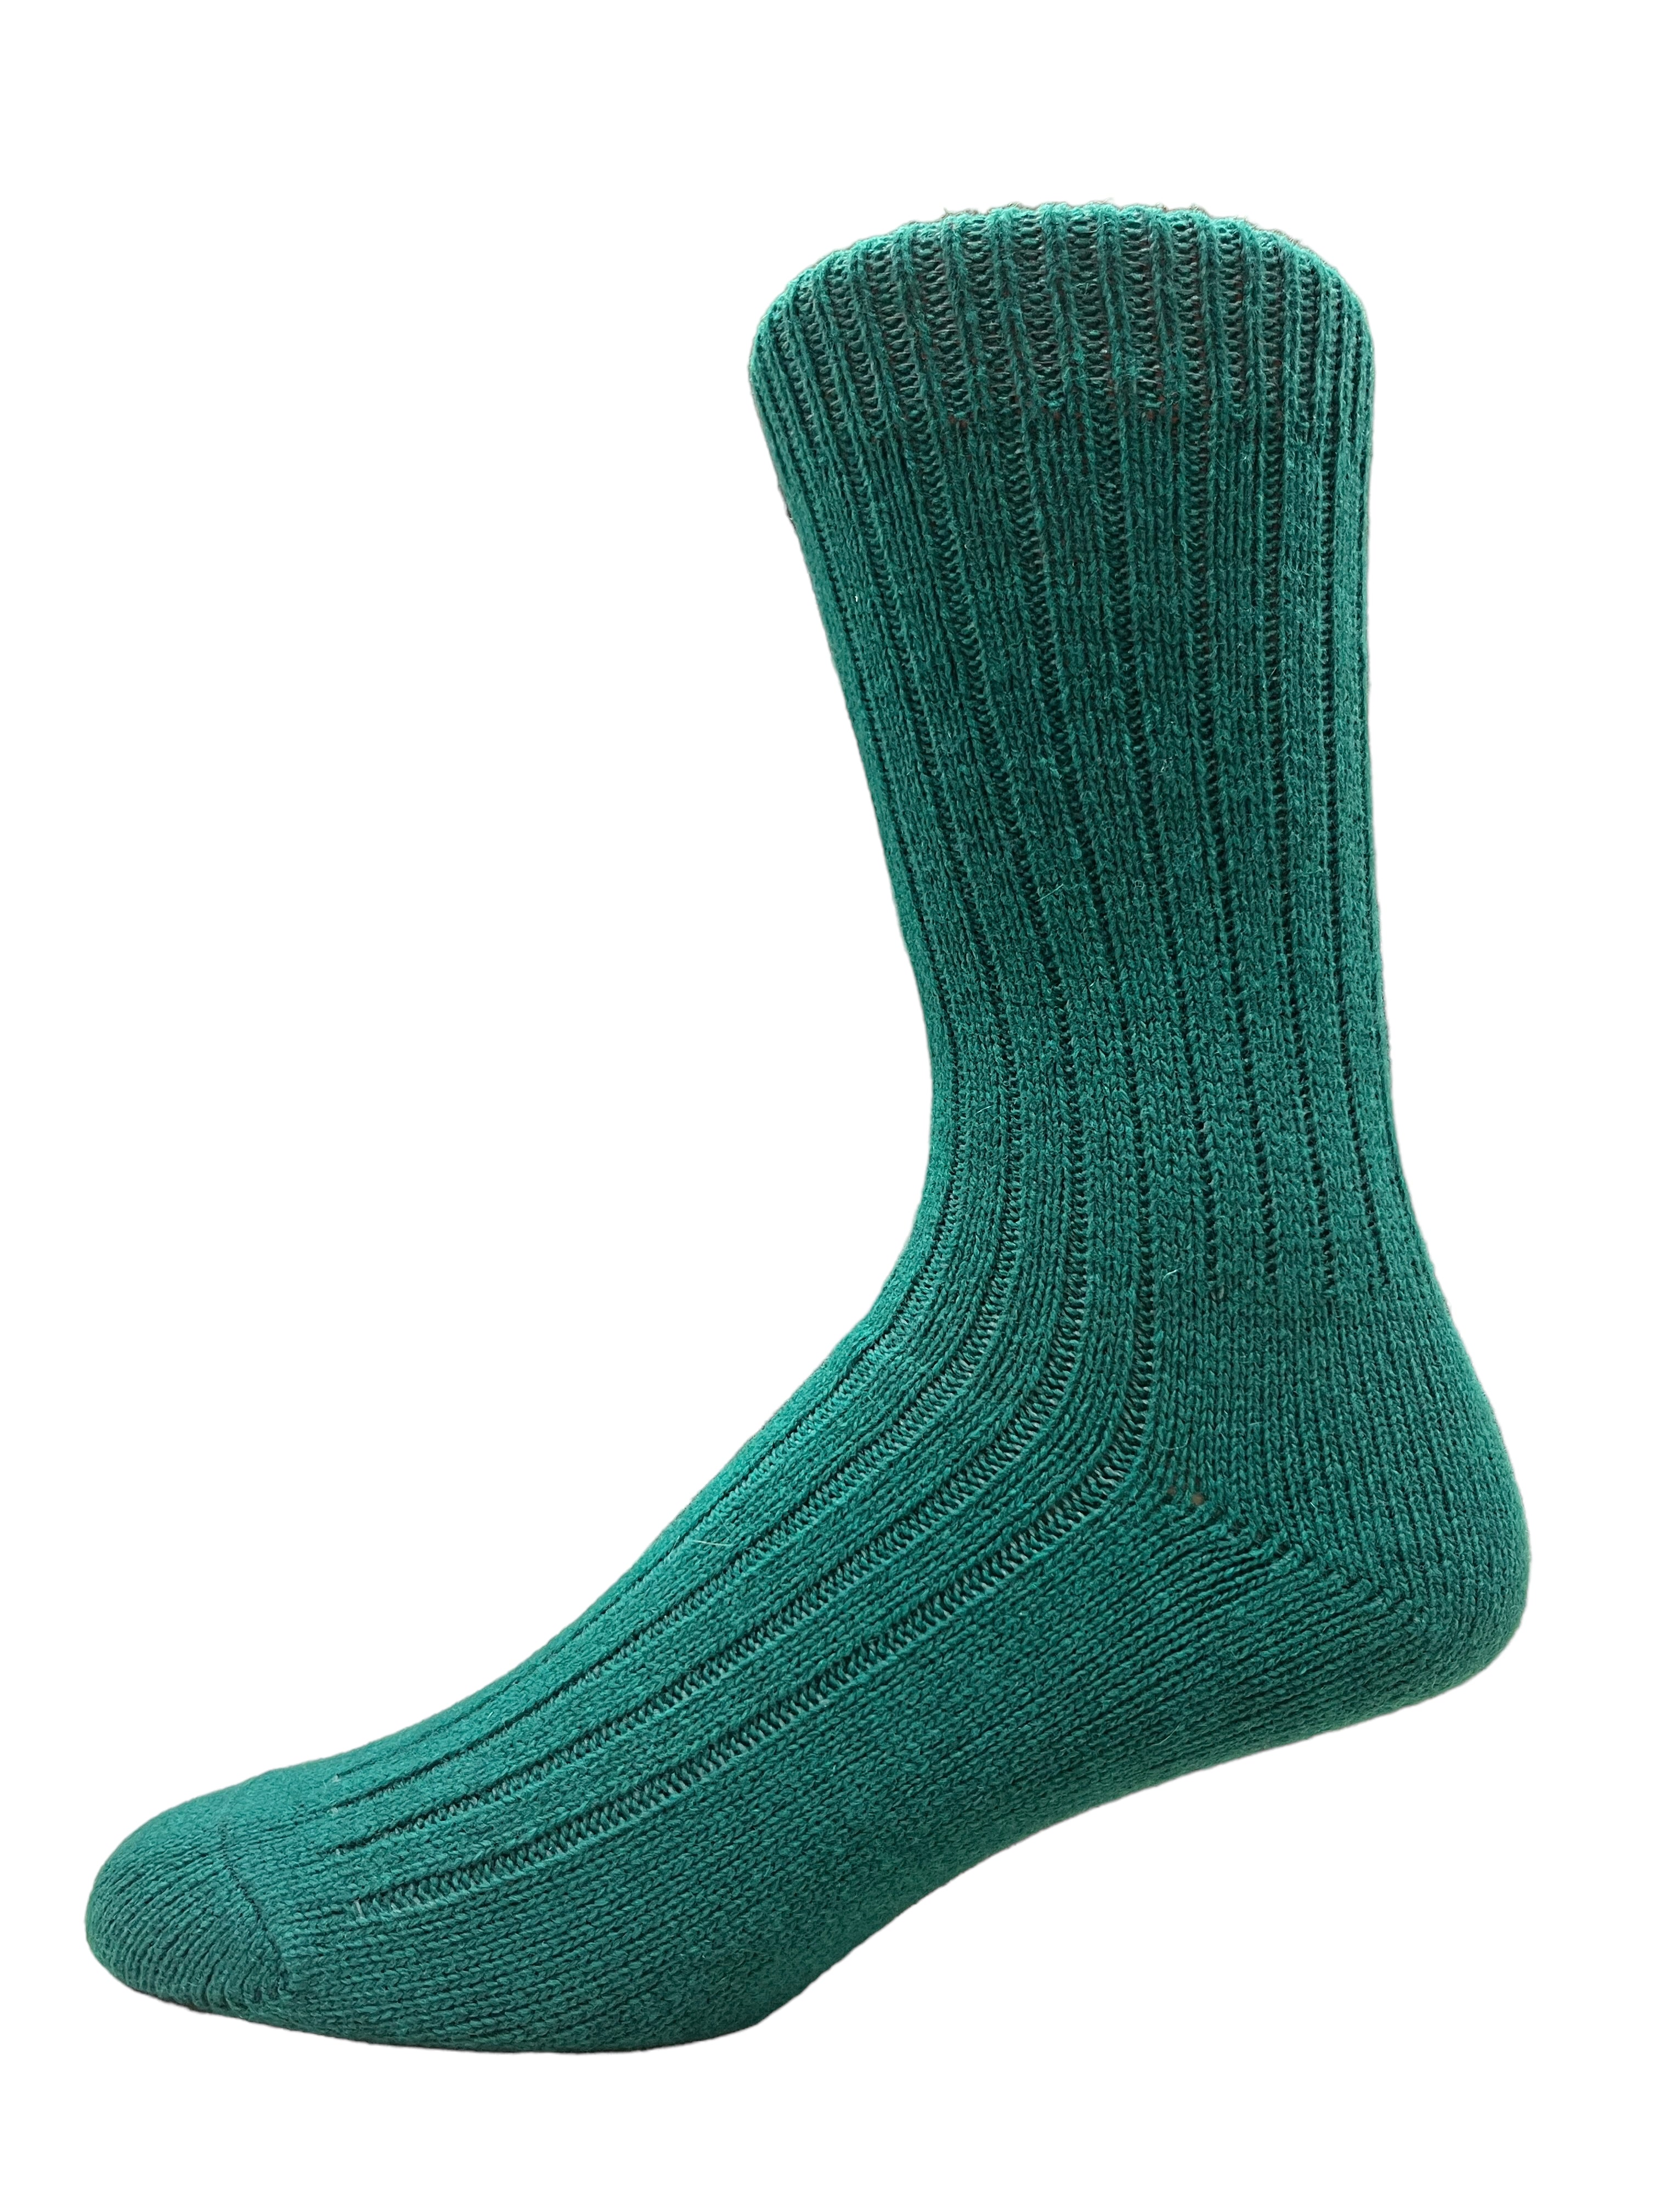 Irish Merino Wool Socks